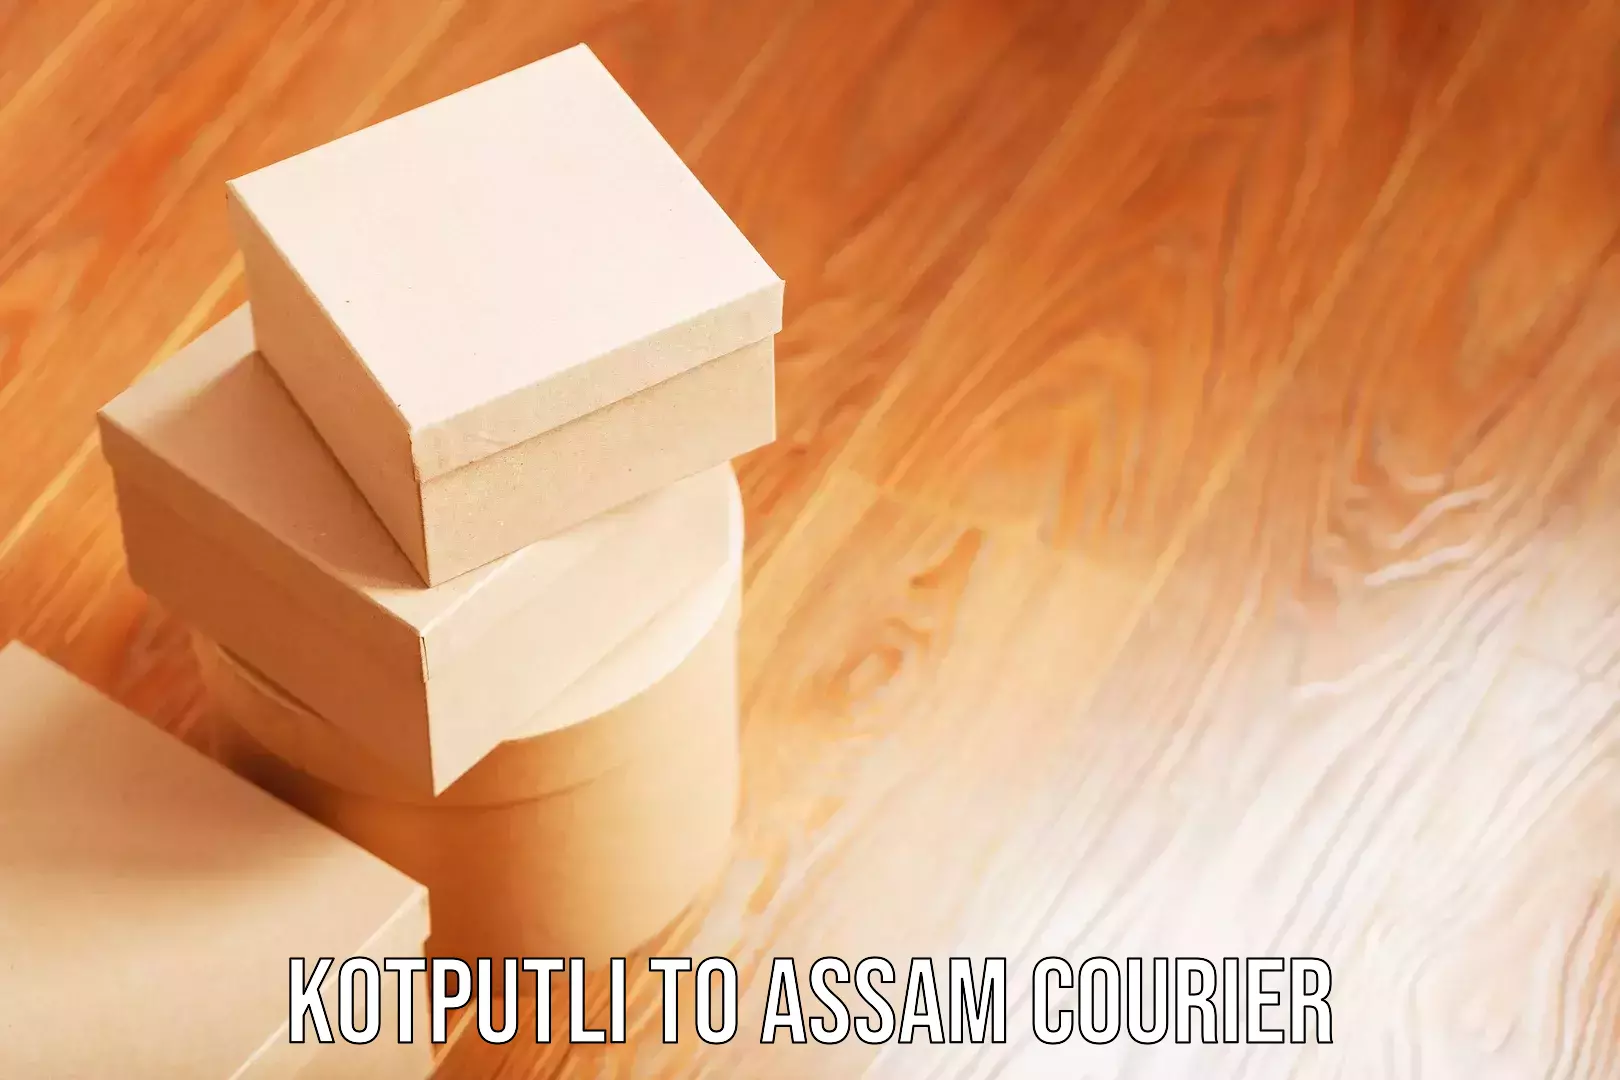 Bulk luggage shipping Kotputli to Assam